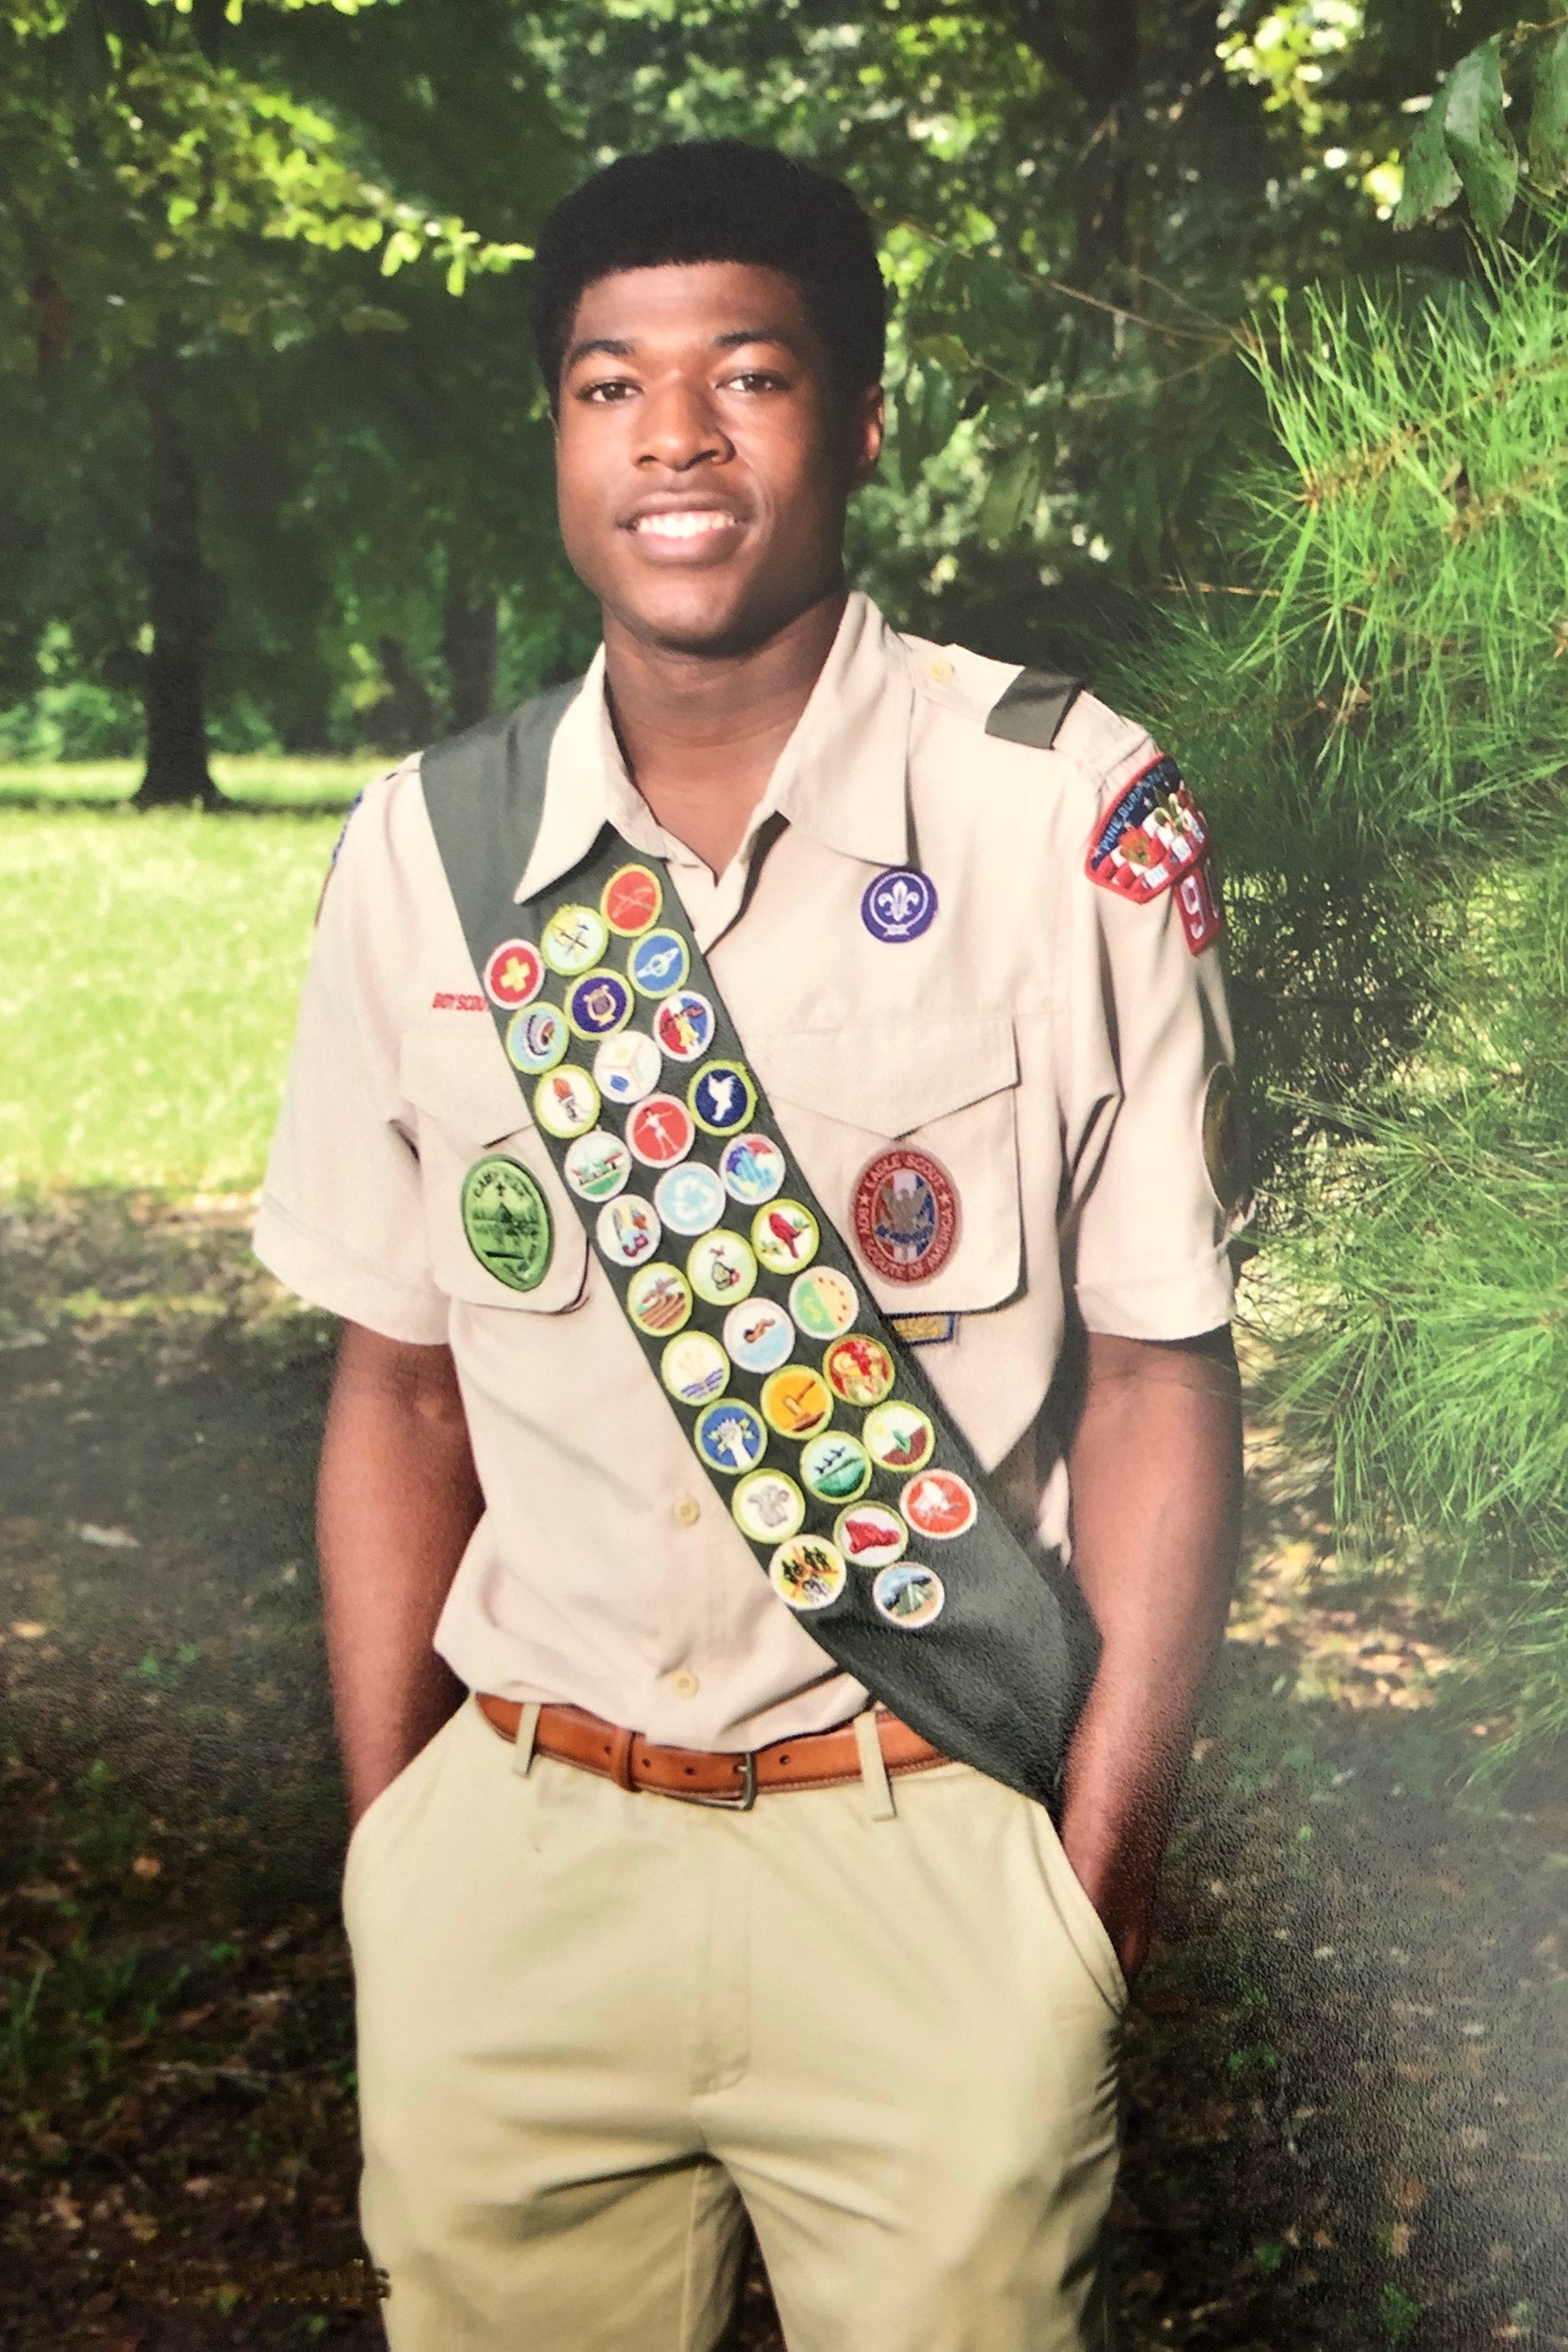 Noah Harris in Scout uniform.